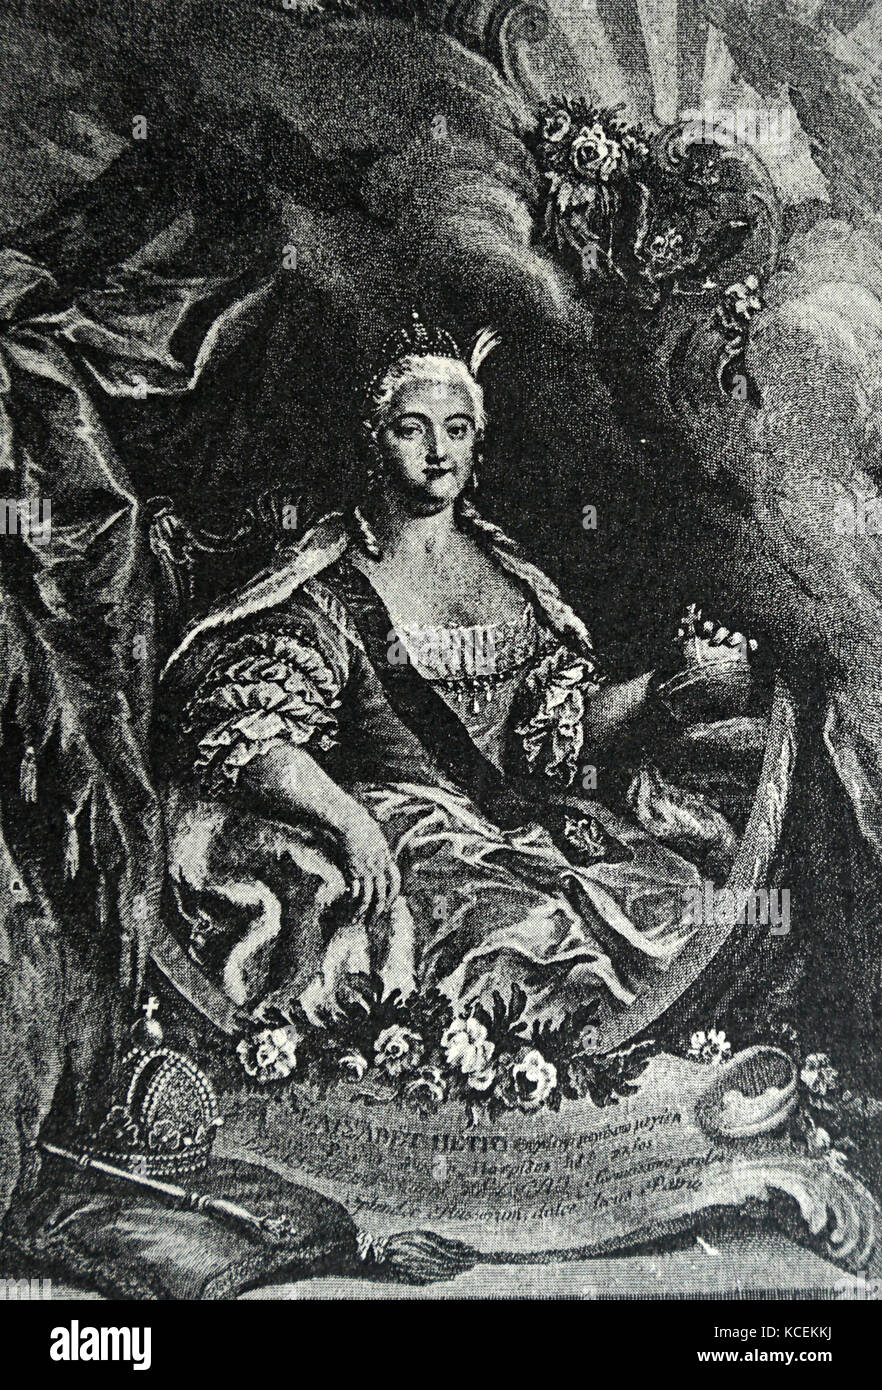 Incisi ritratto dell'imperatrice Elisabetta d'Austria (1837-1898). Datata del XIX secolo Foto Stock